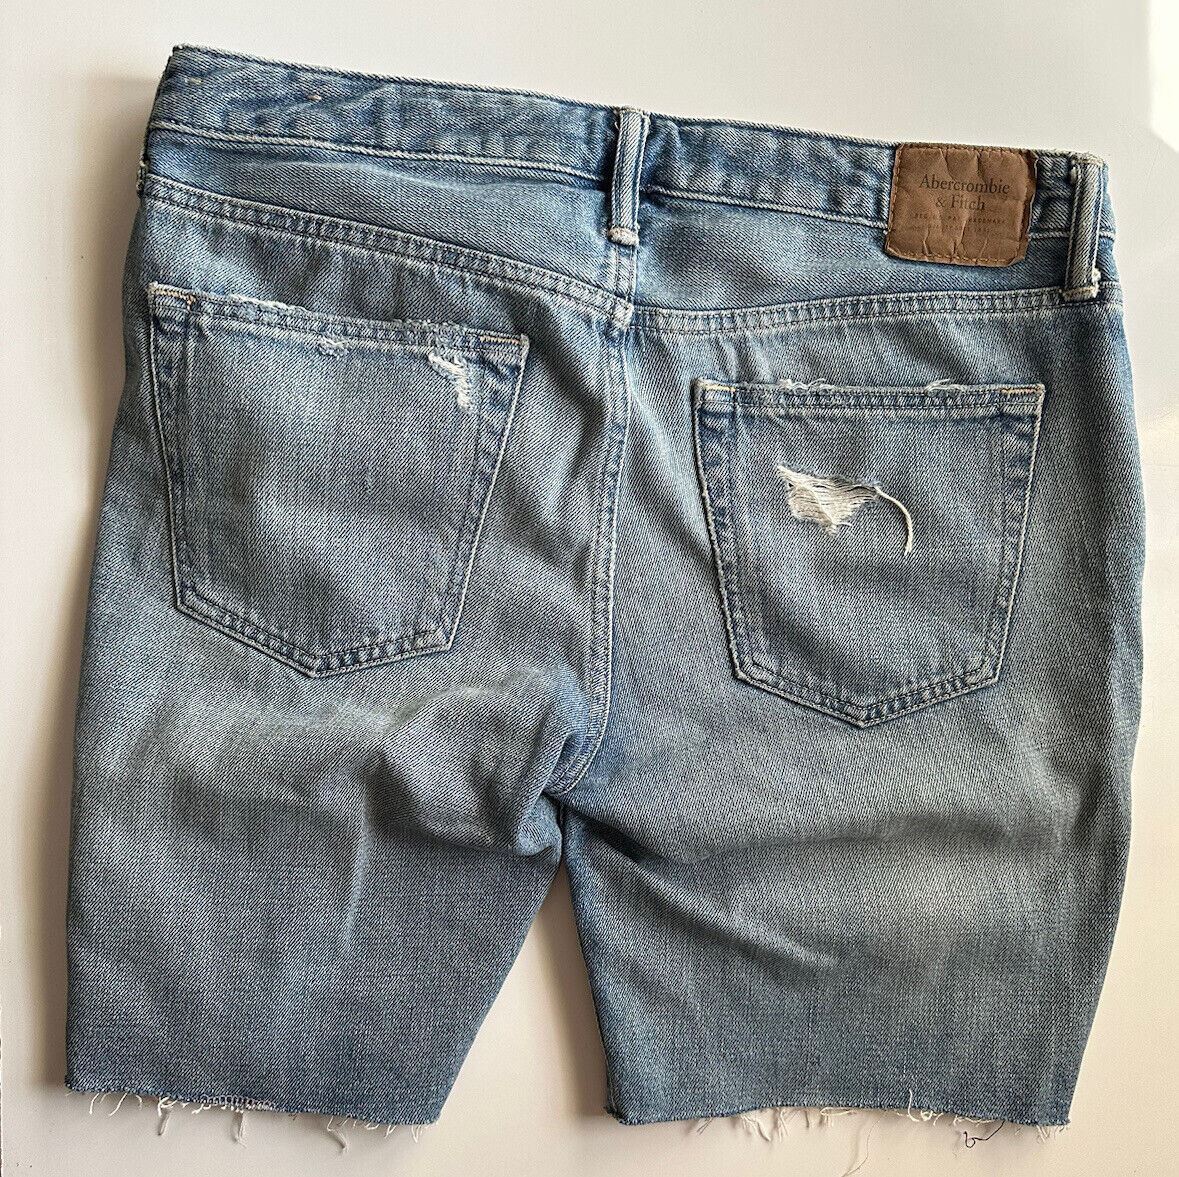 Abercrombie &amp; Fitch Herren-Shorts in moderner blauer Jeans, Größe 32 